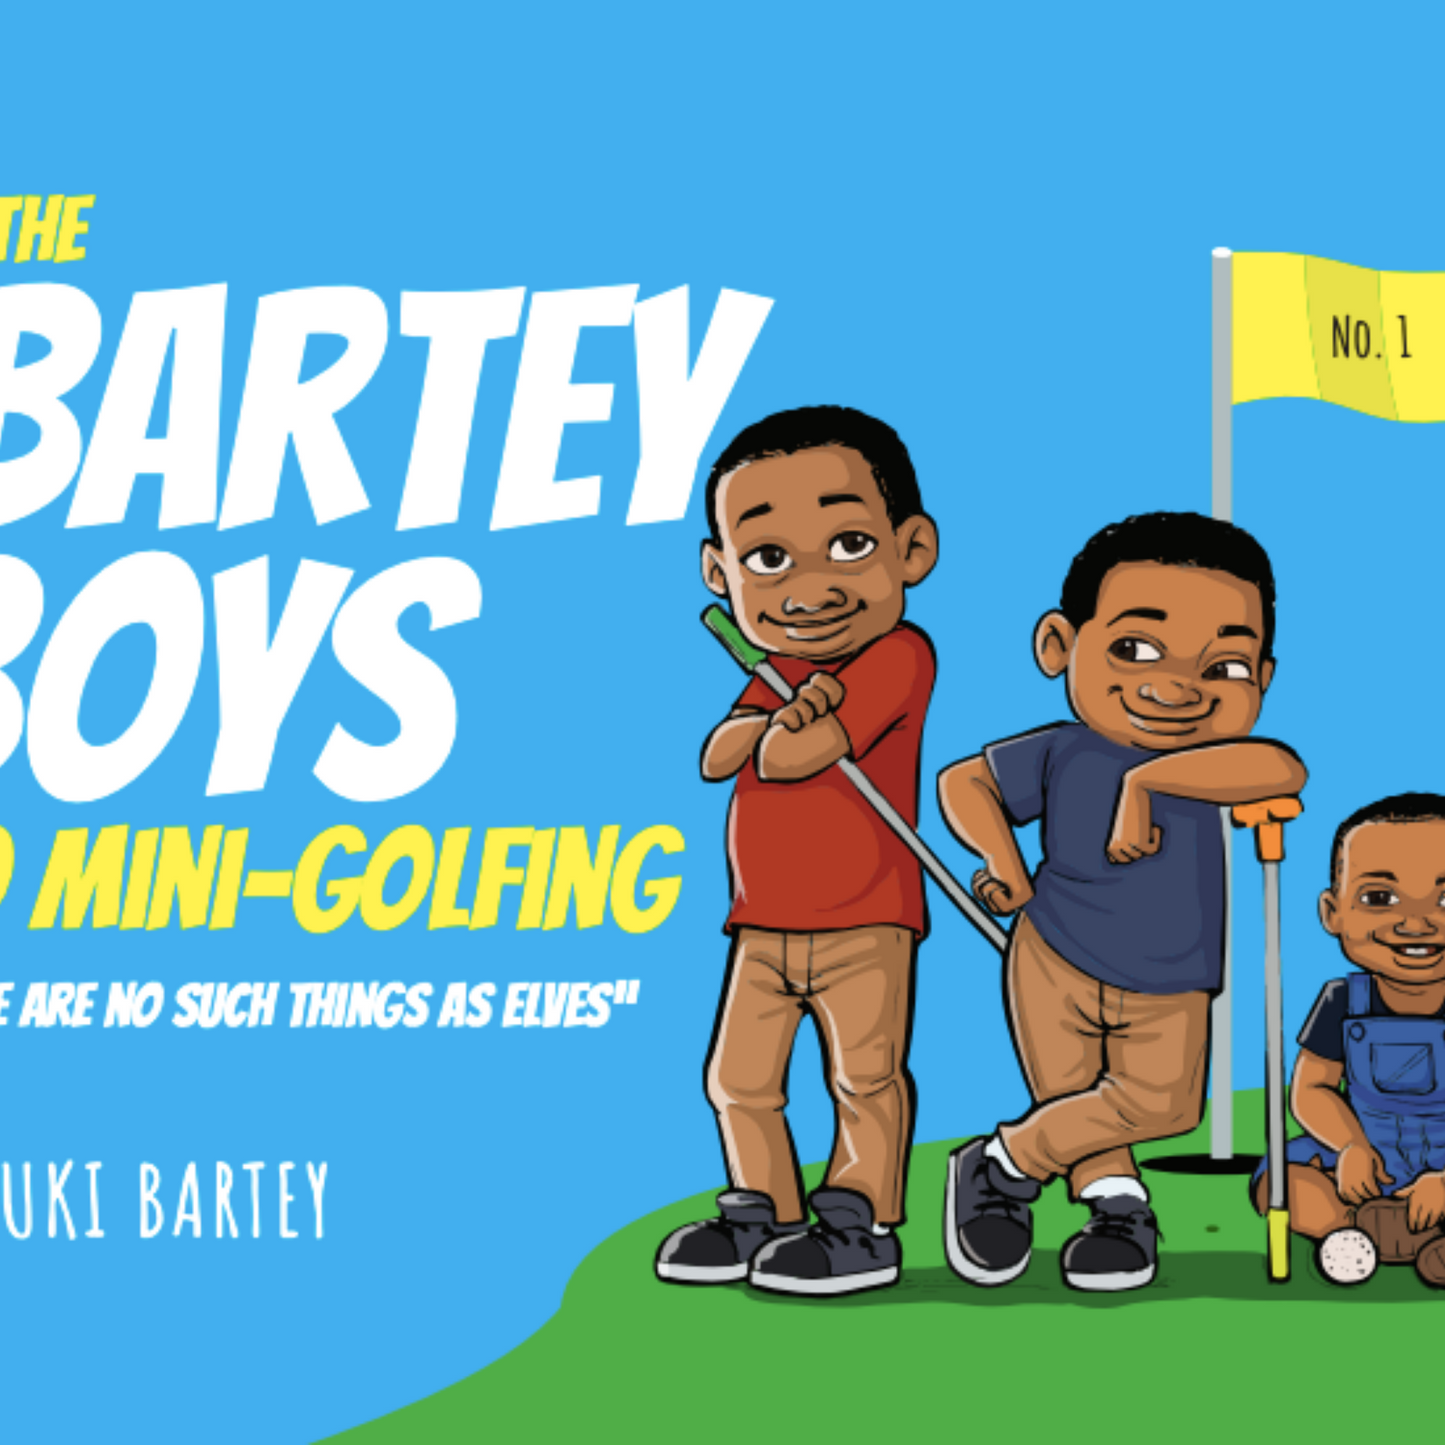 The Bartey boys go mini golfing